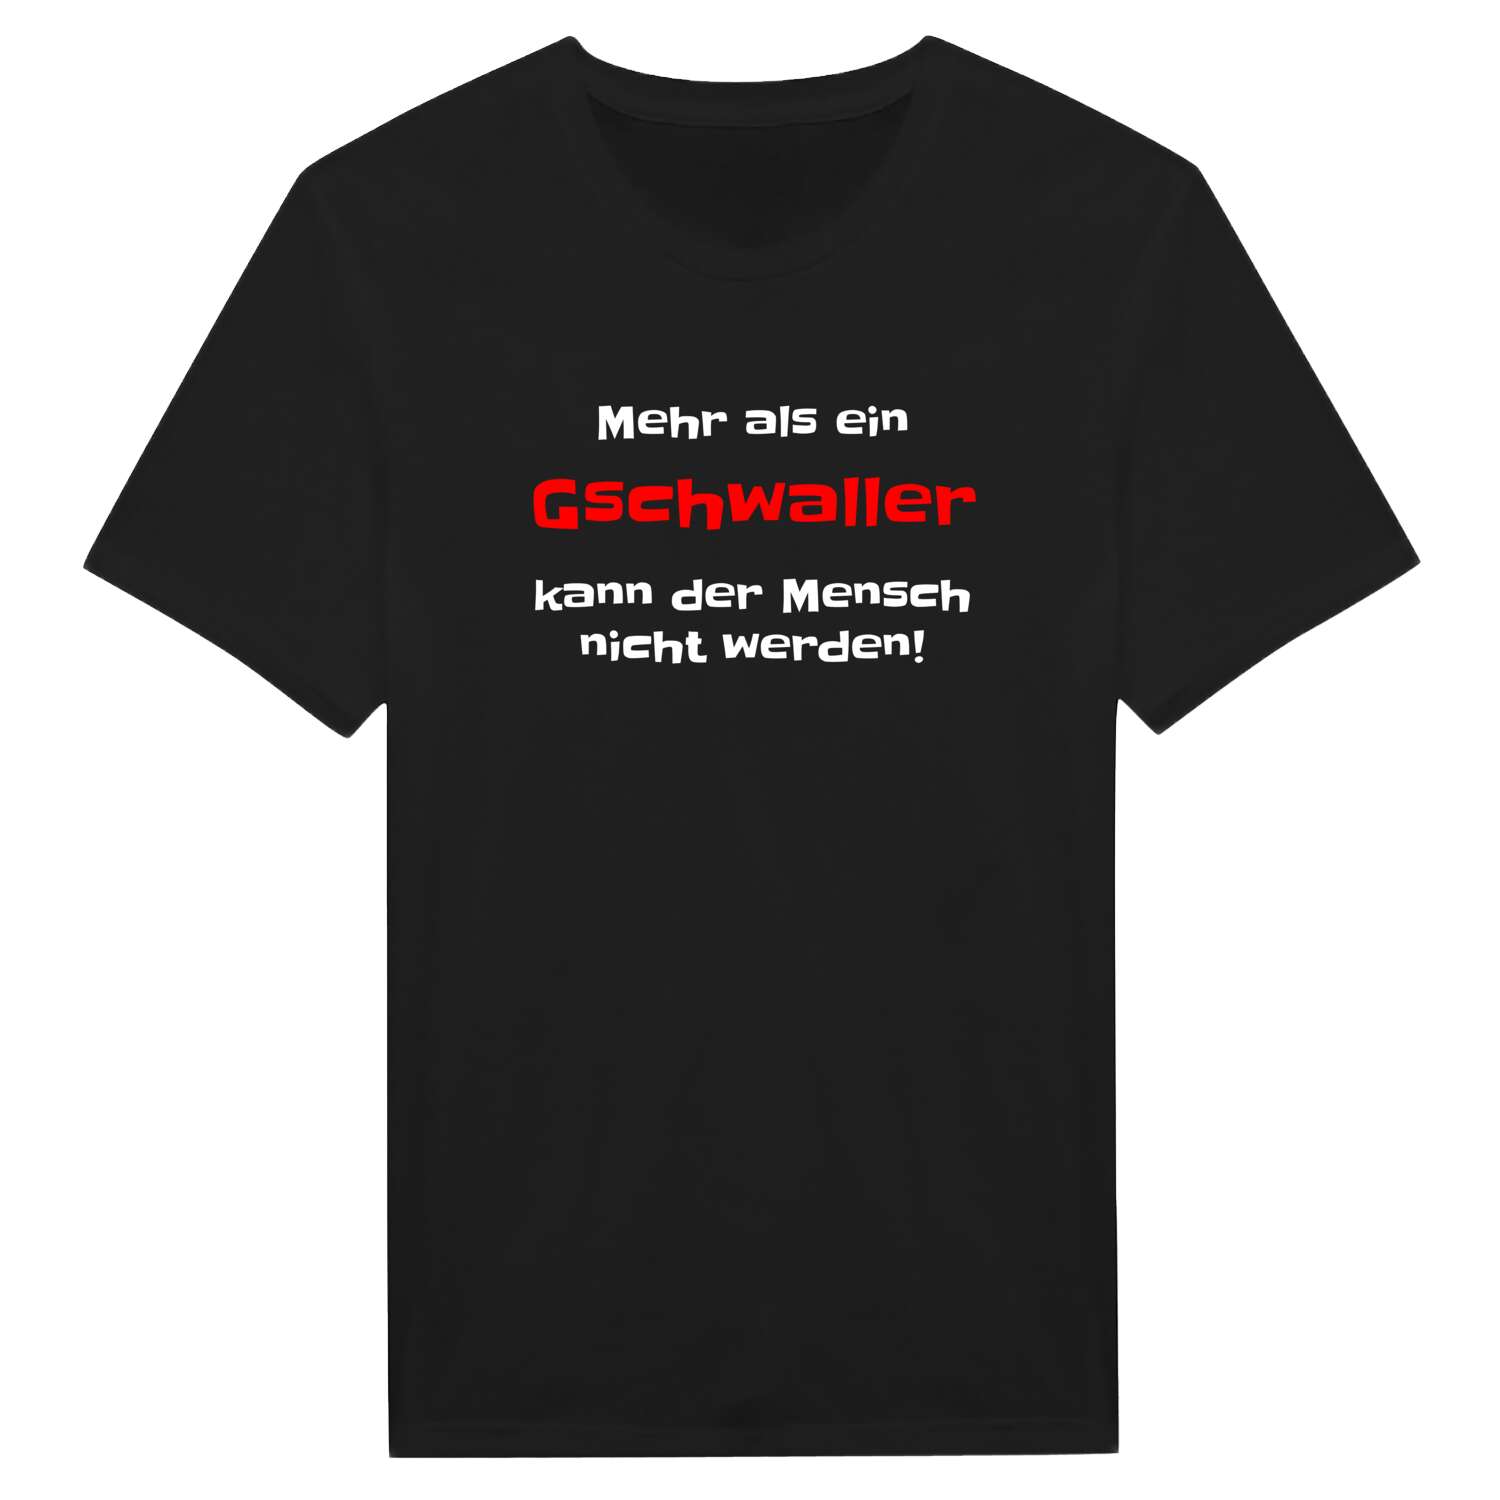 Gschwall T-Shirt »Mehr als ein«